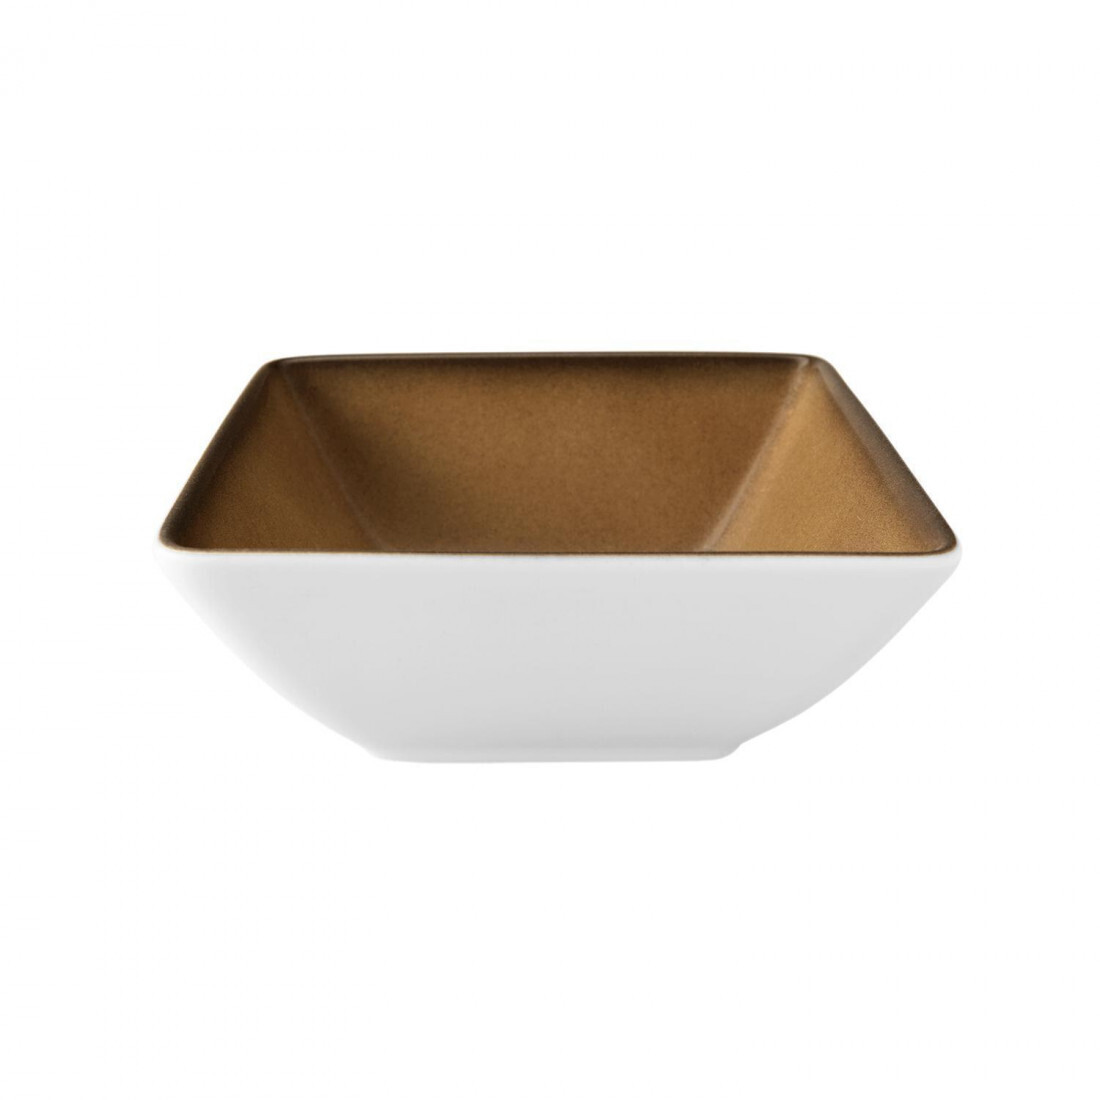 Seltmann - Buffet gourmet - Bowl 5140 15x15 cm Caramel